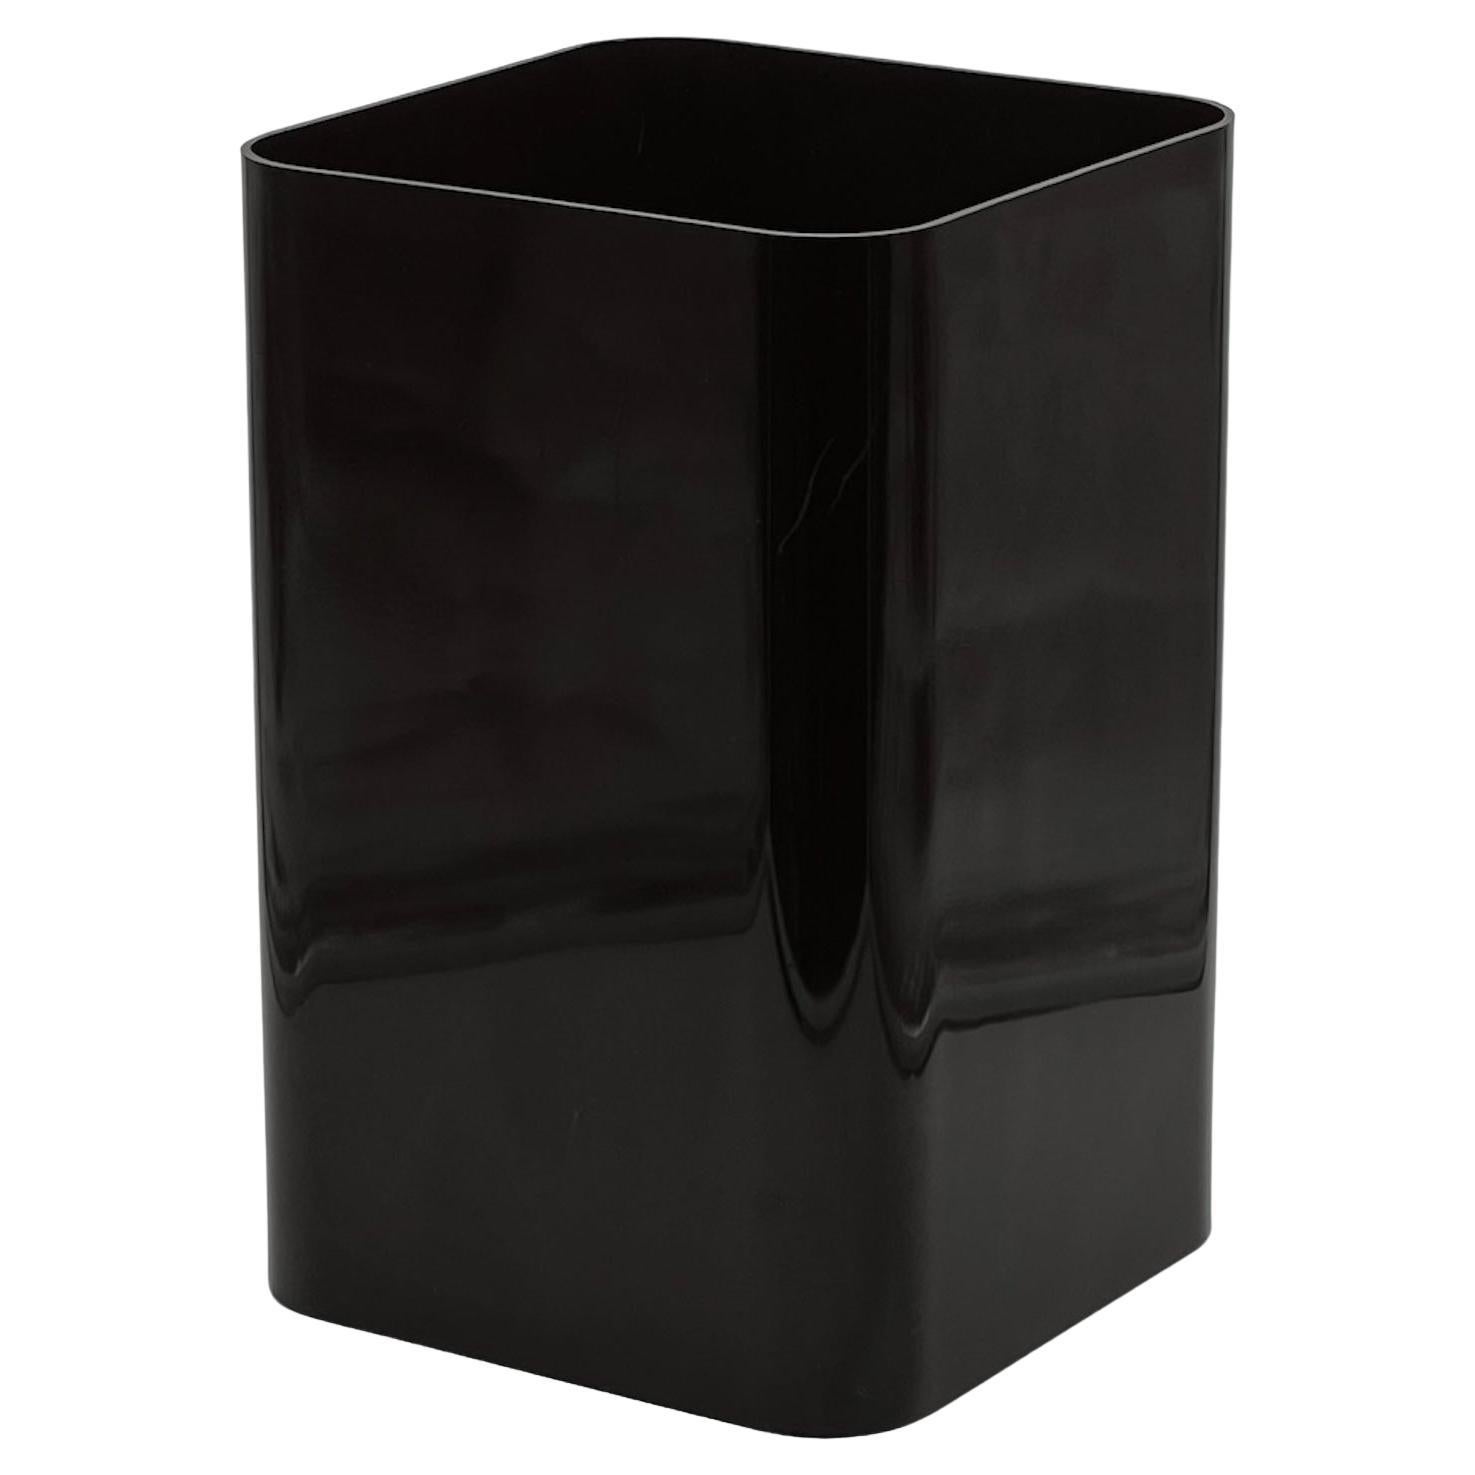 Iconic Kartell 4672 Dark Brown Plastic Paper Basket - Ufficio Tecnico Design For Sale